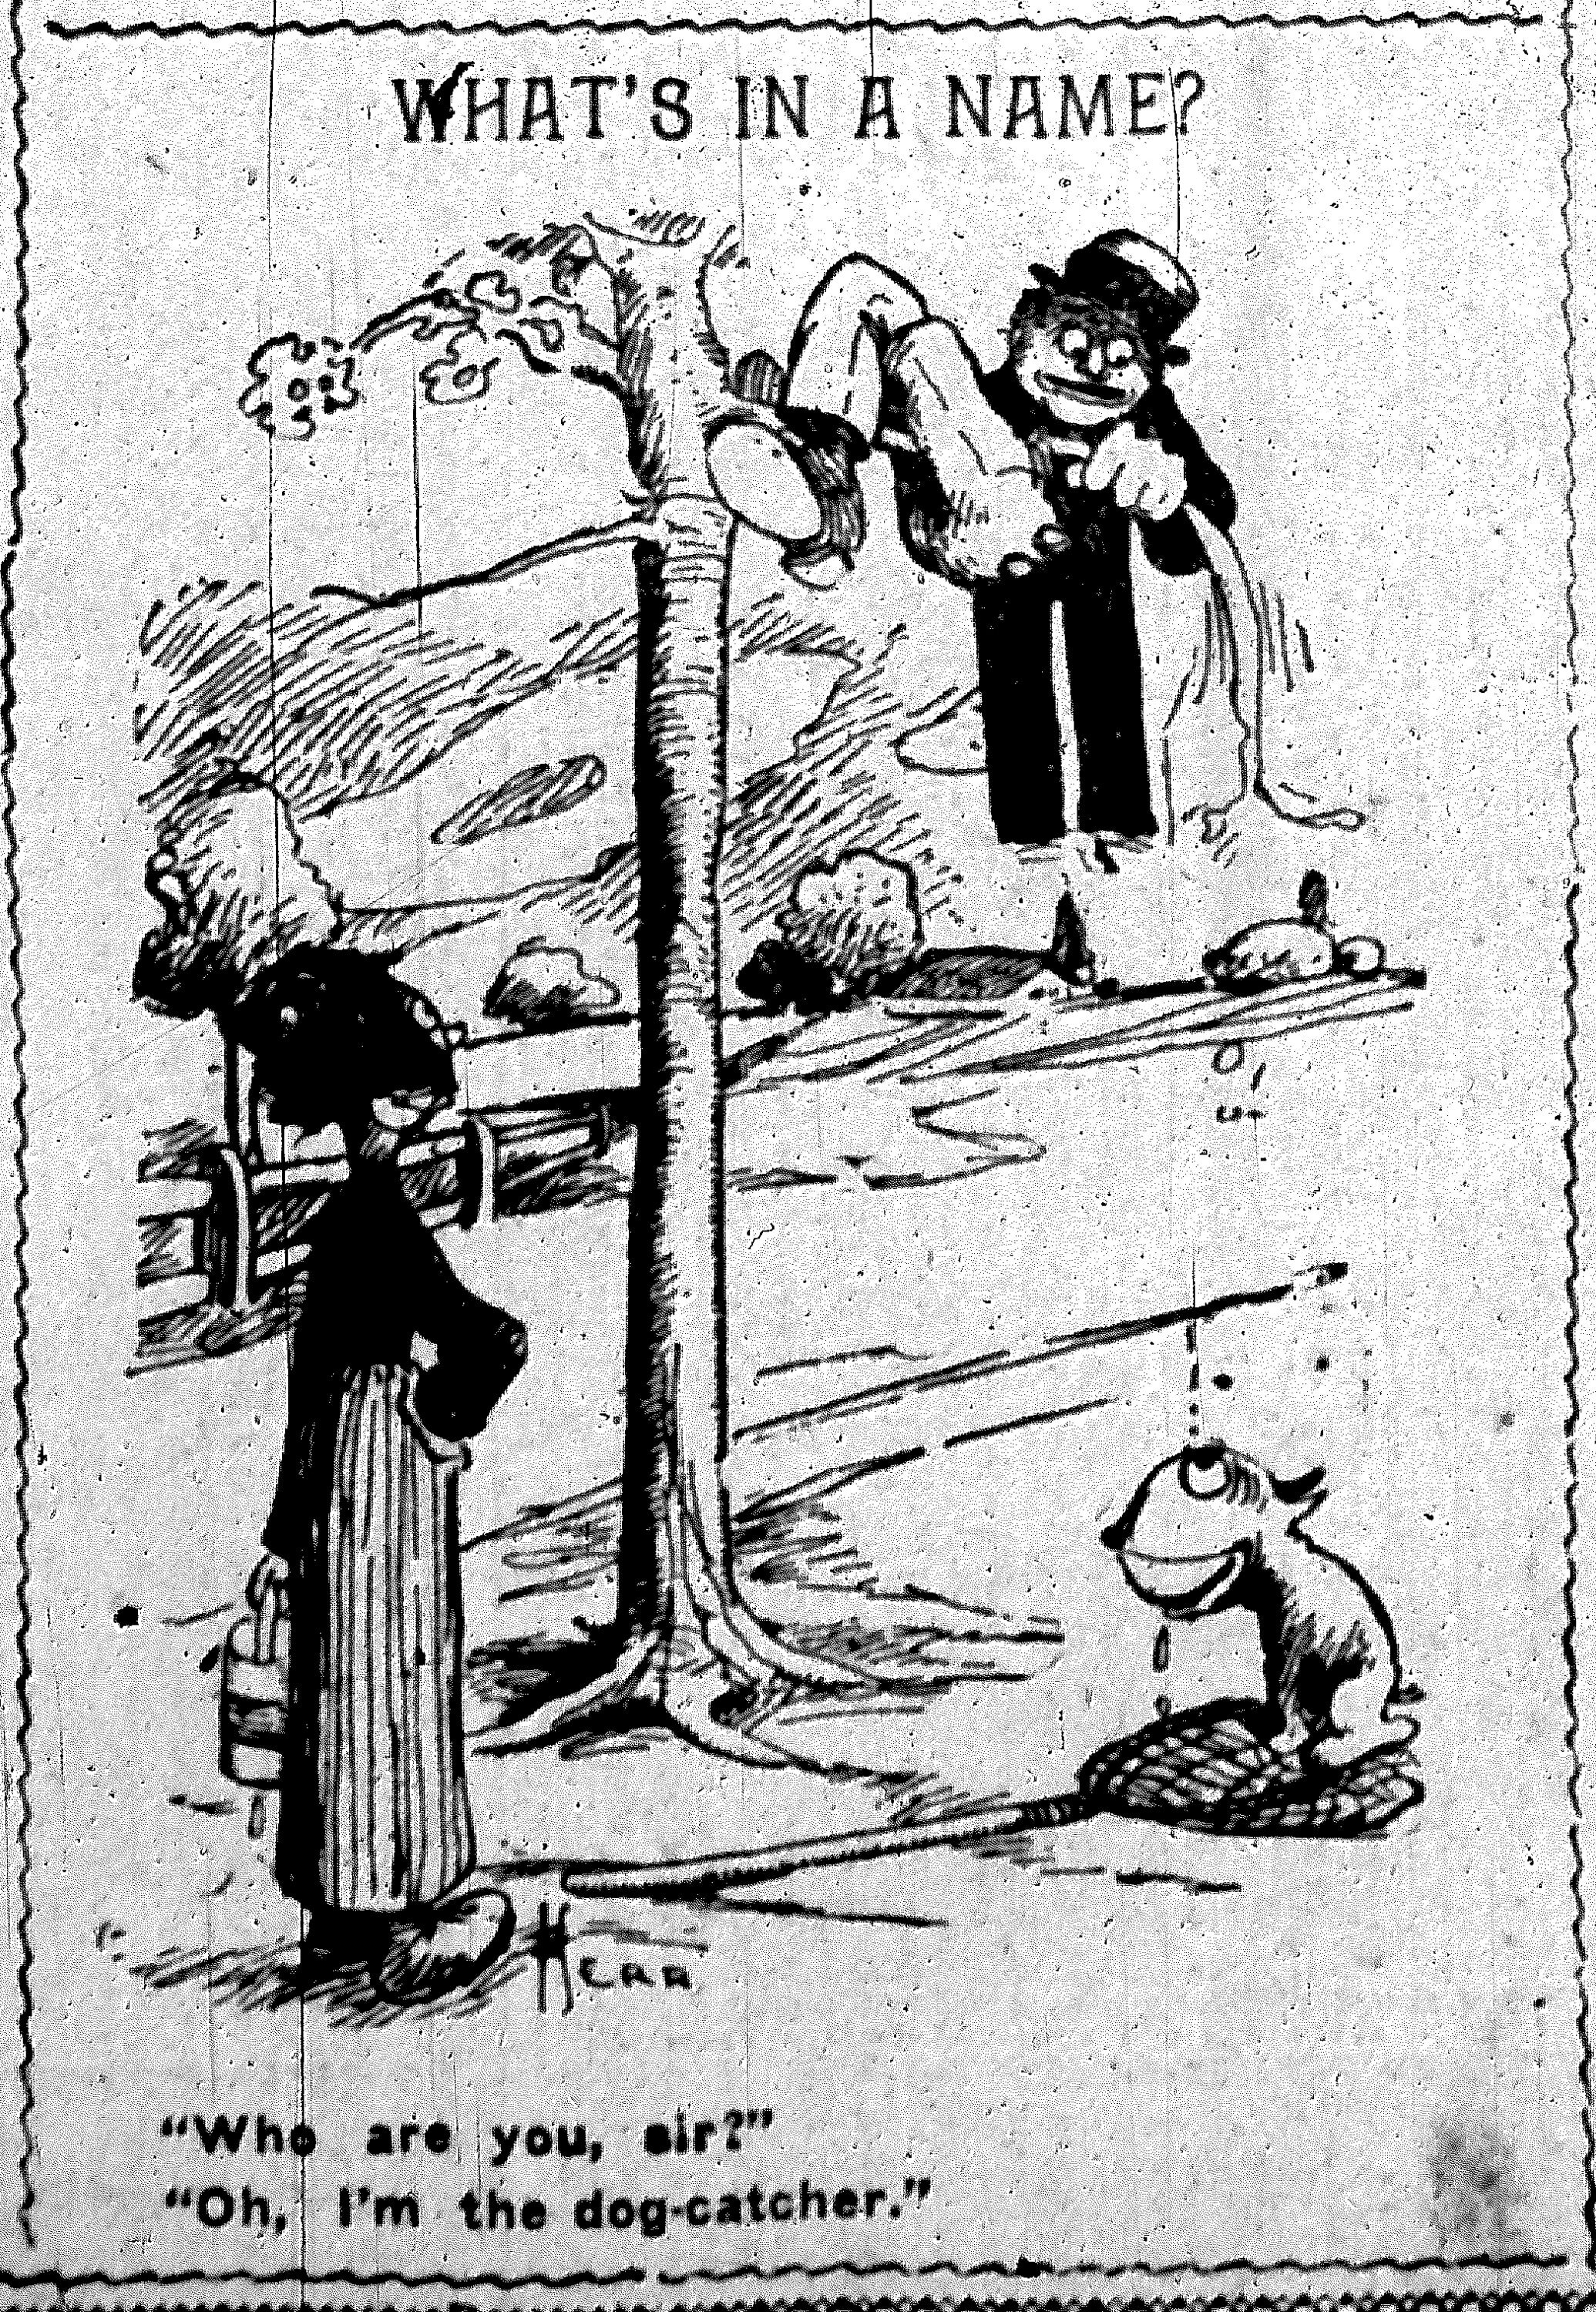 04-nyej-03-27-1901-herriman-cartoon.jpg